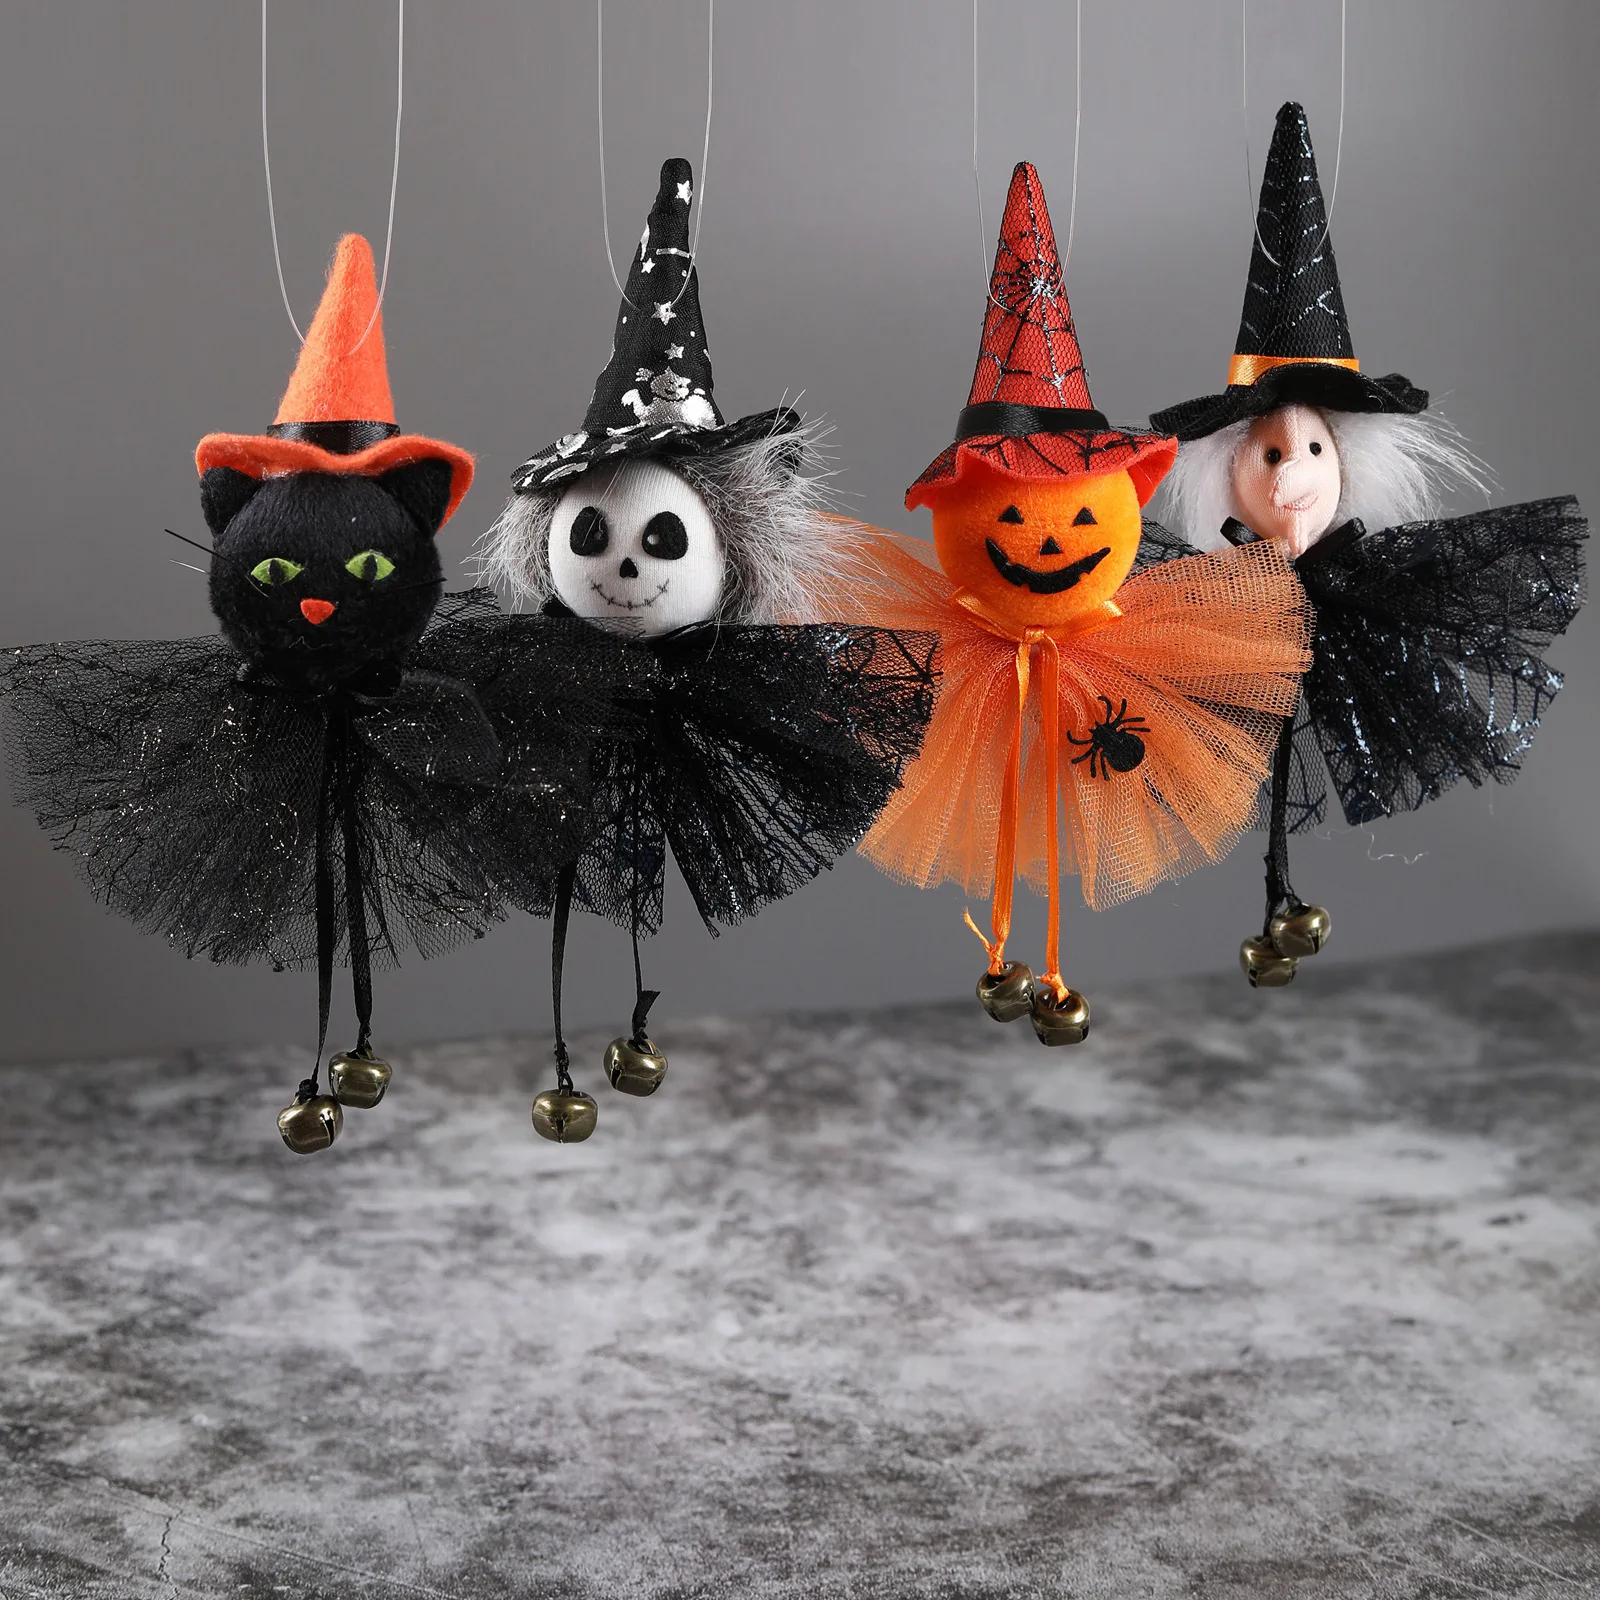 

Украшение на Хэллоуин, подвеска в виде тыквы, призрака, ведьмы, черной кошки, страшная подвеска ведьмы